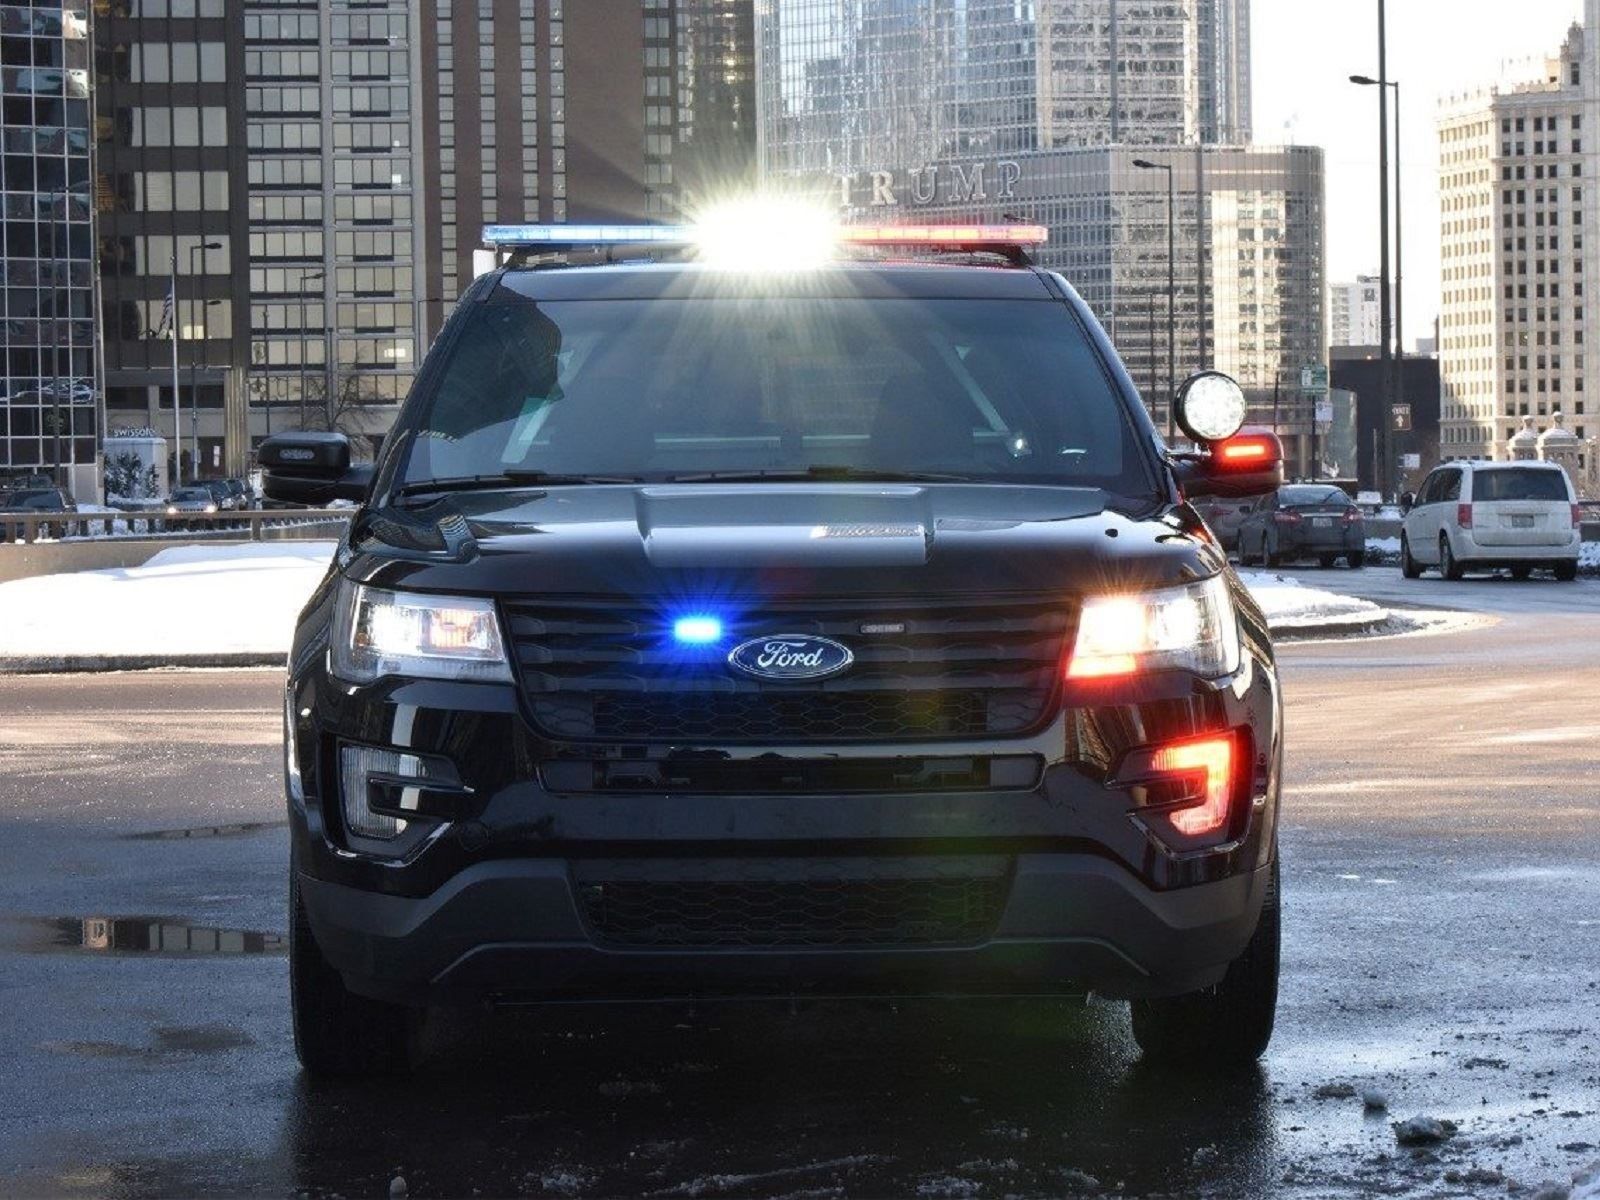 Nový policejní Ford Interceptor